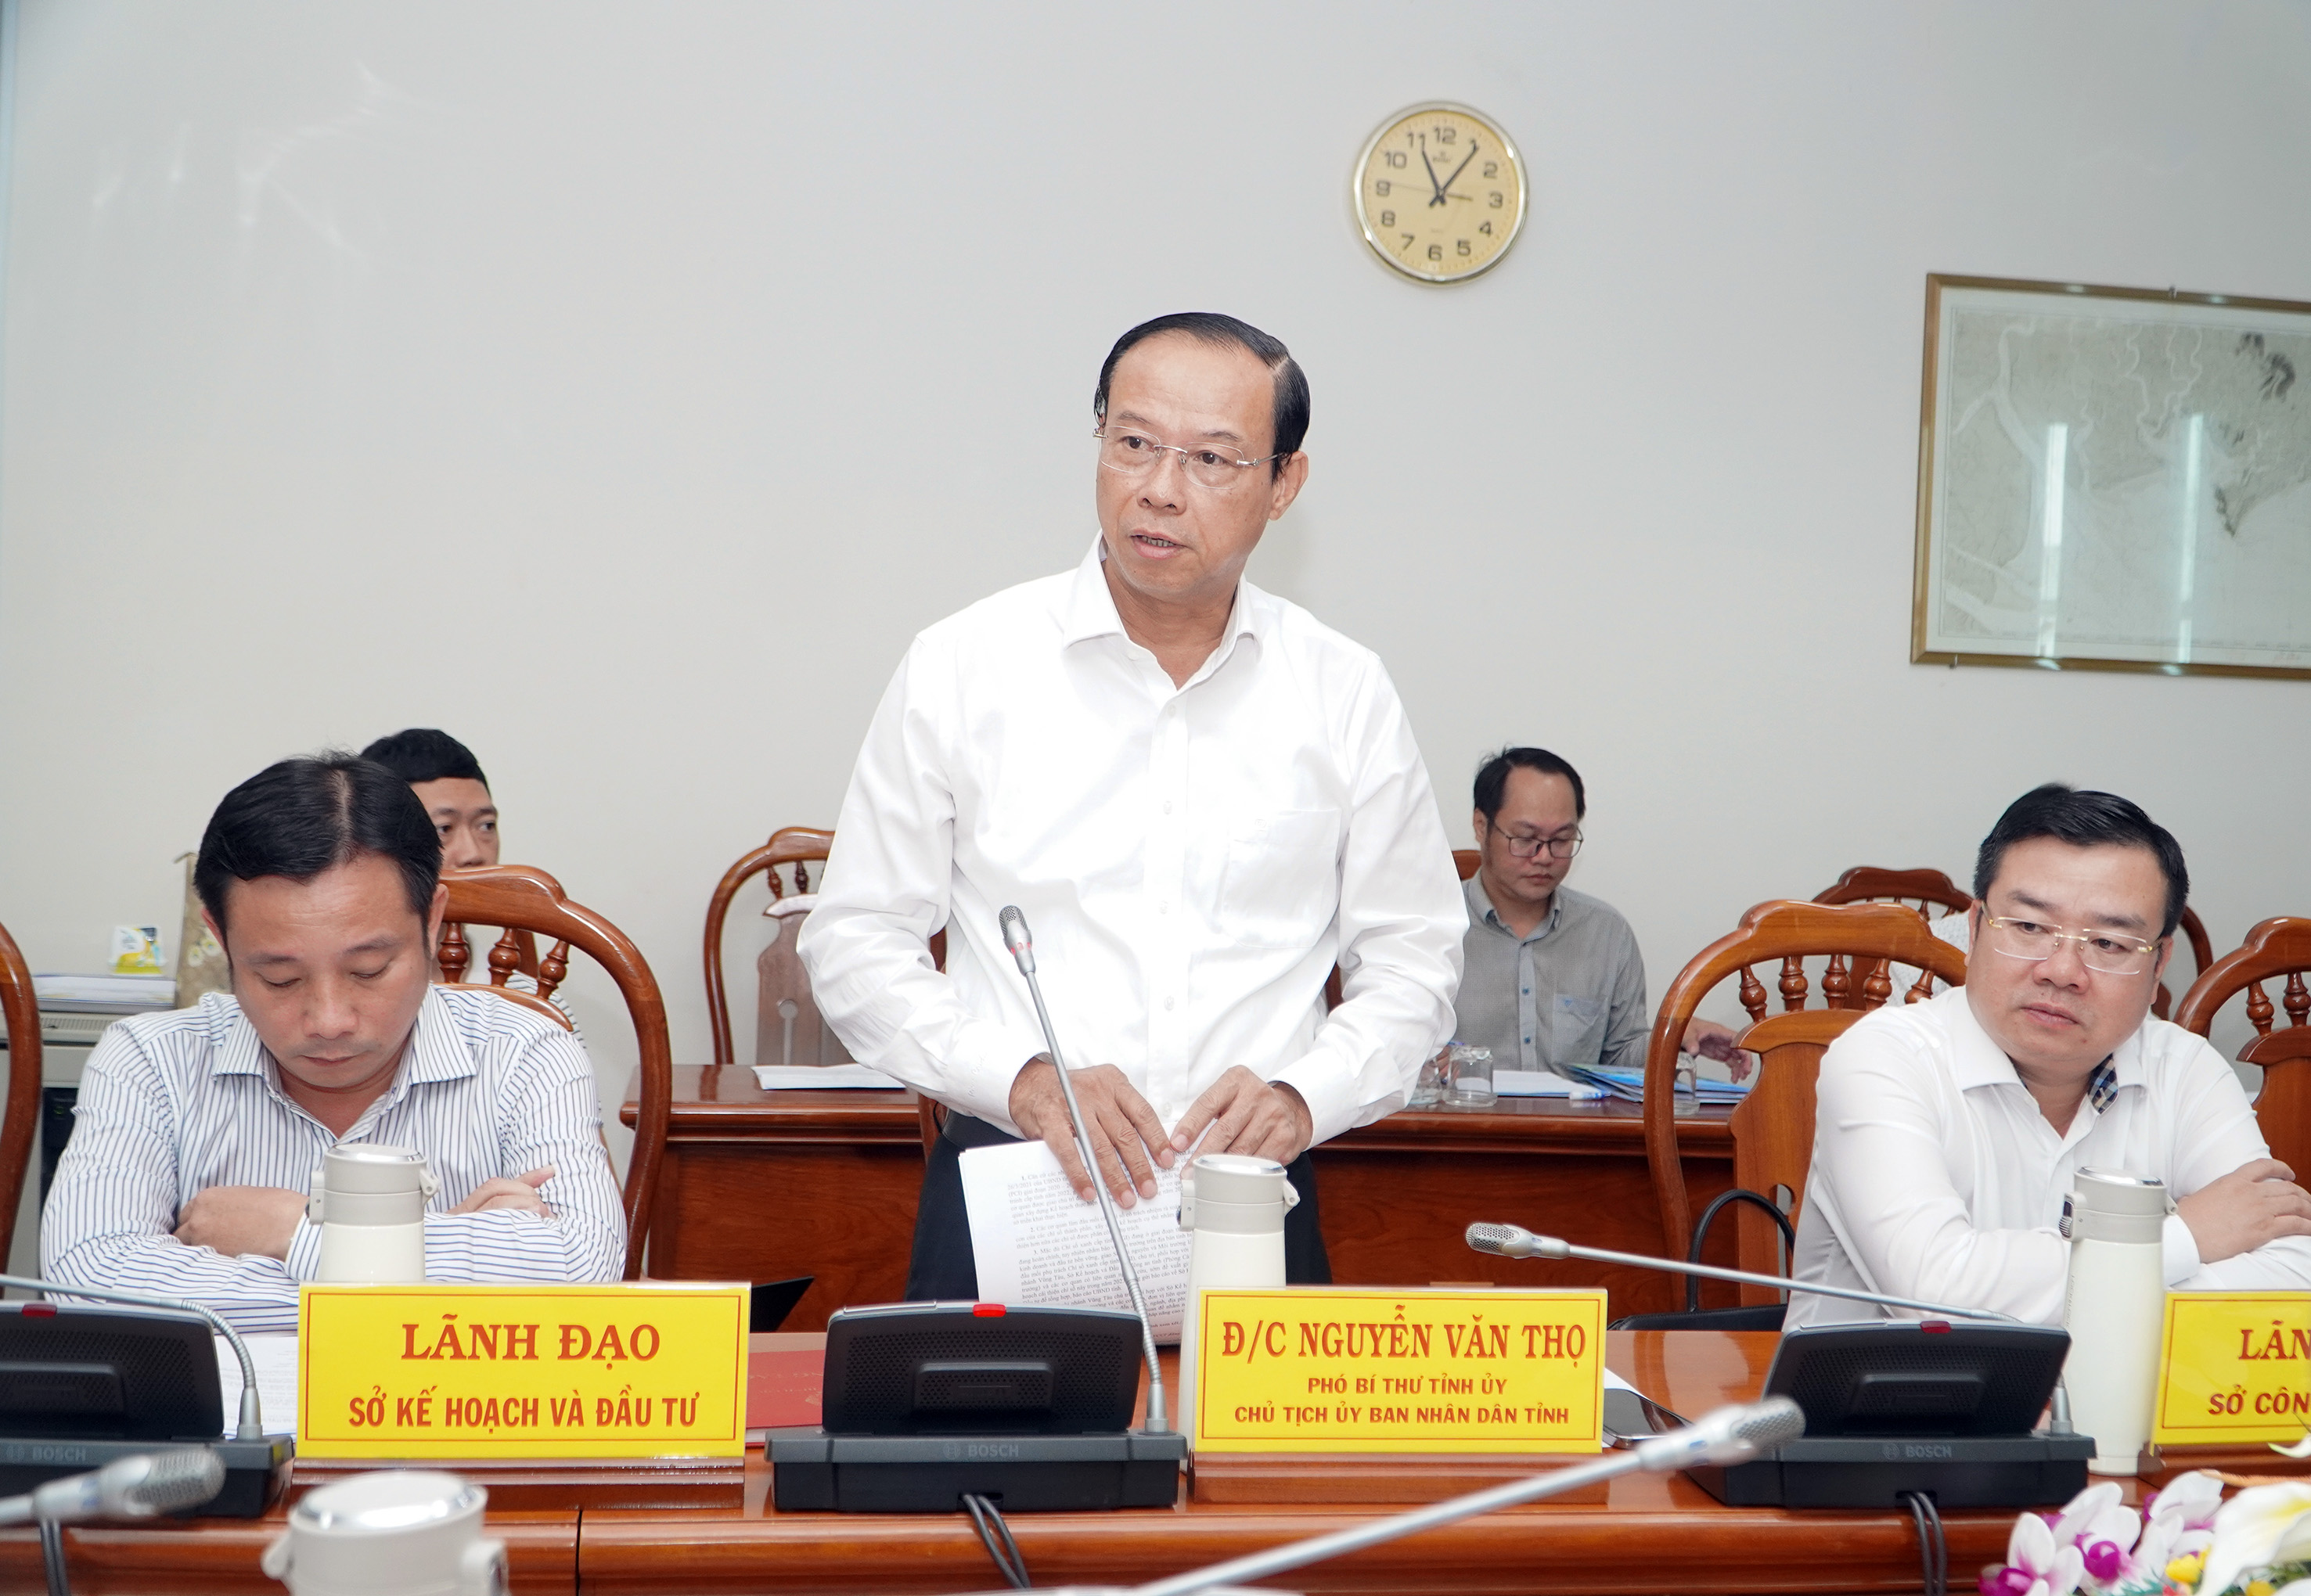 Chủ tịch UBND tỉnh Nguyễn Văn Thọ phát biểu tại buổi làm việc.